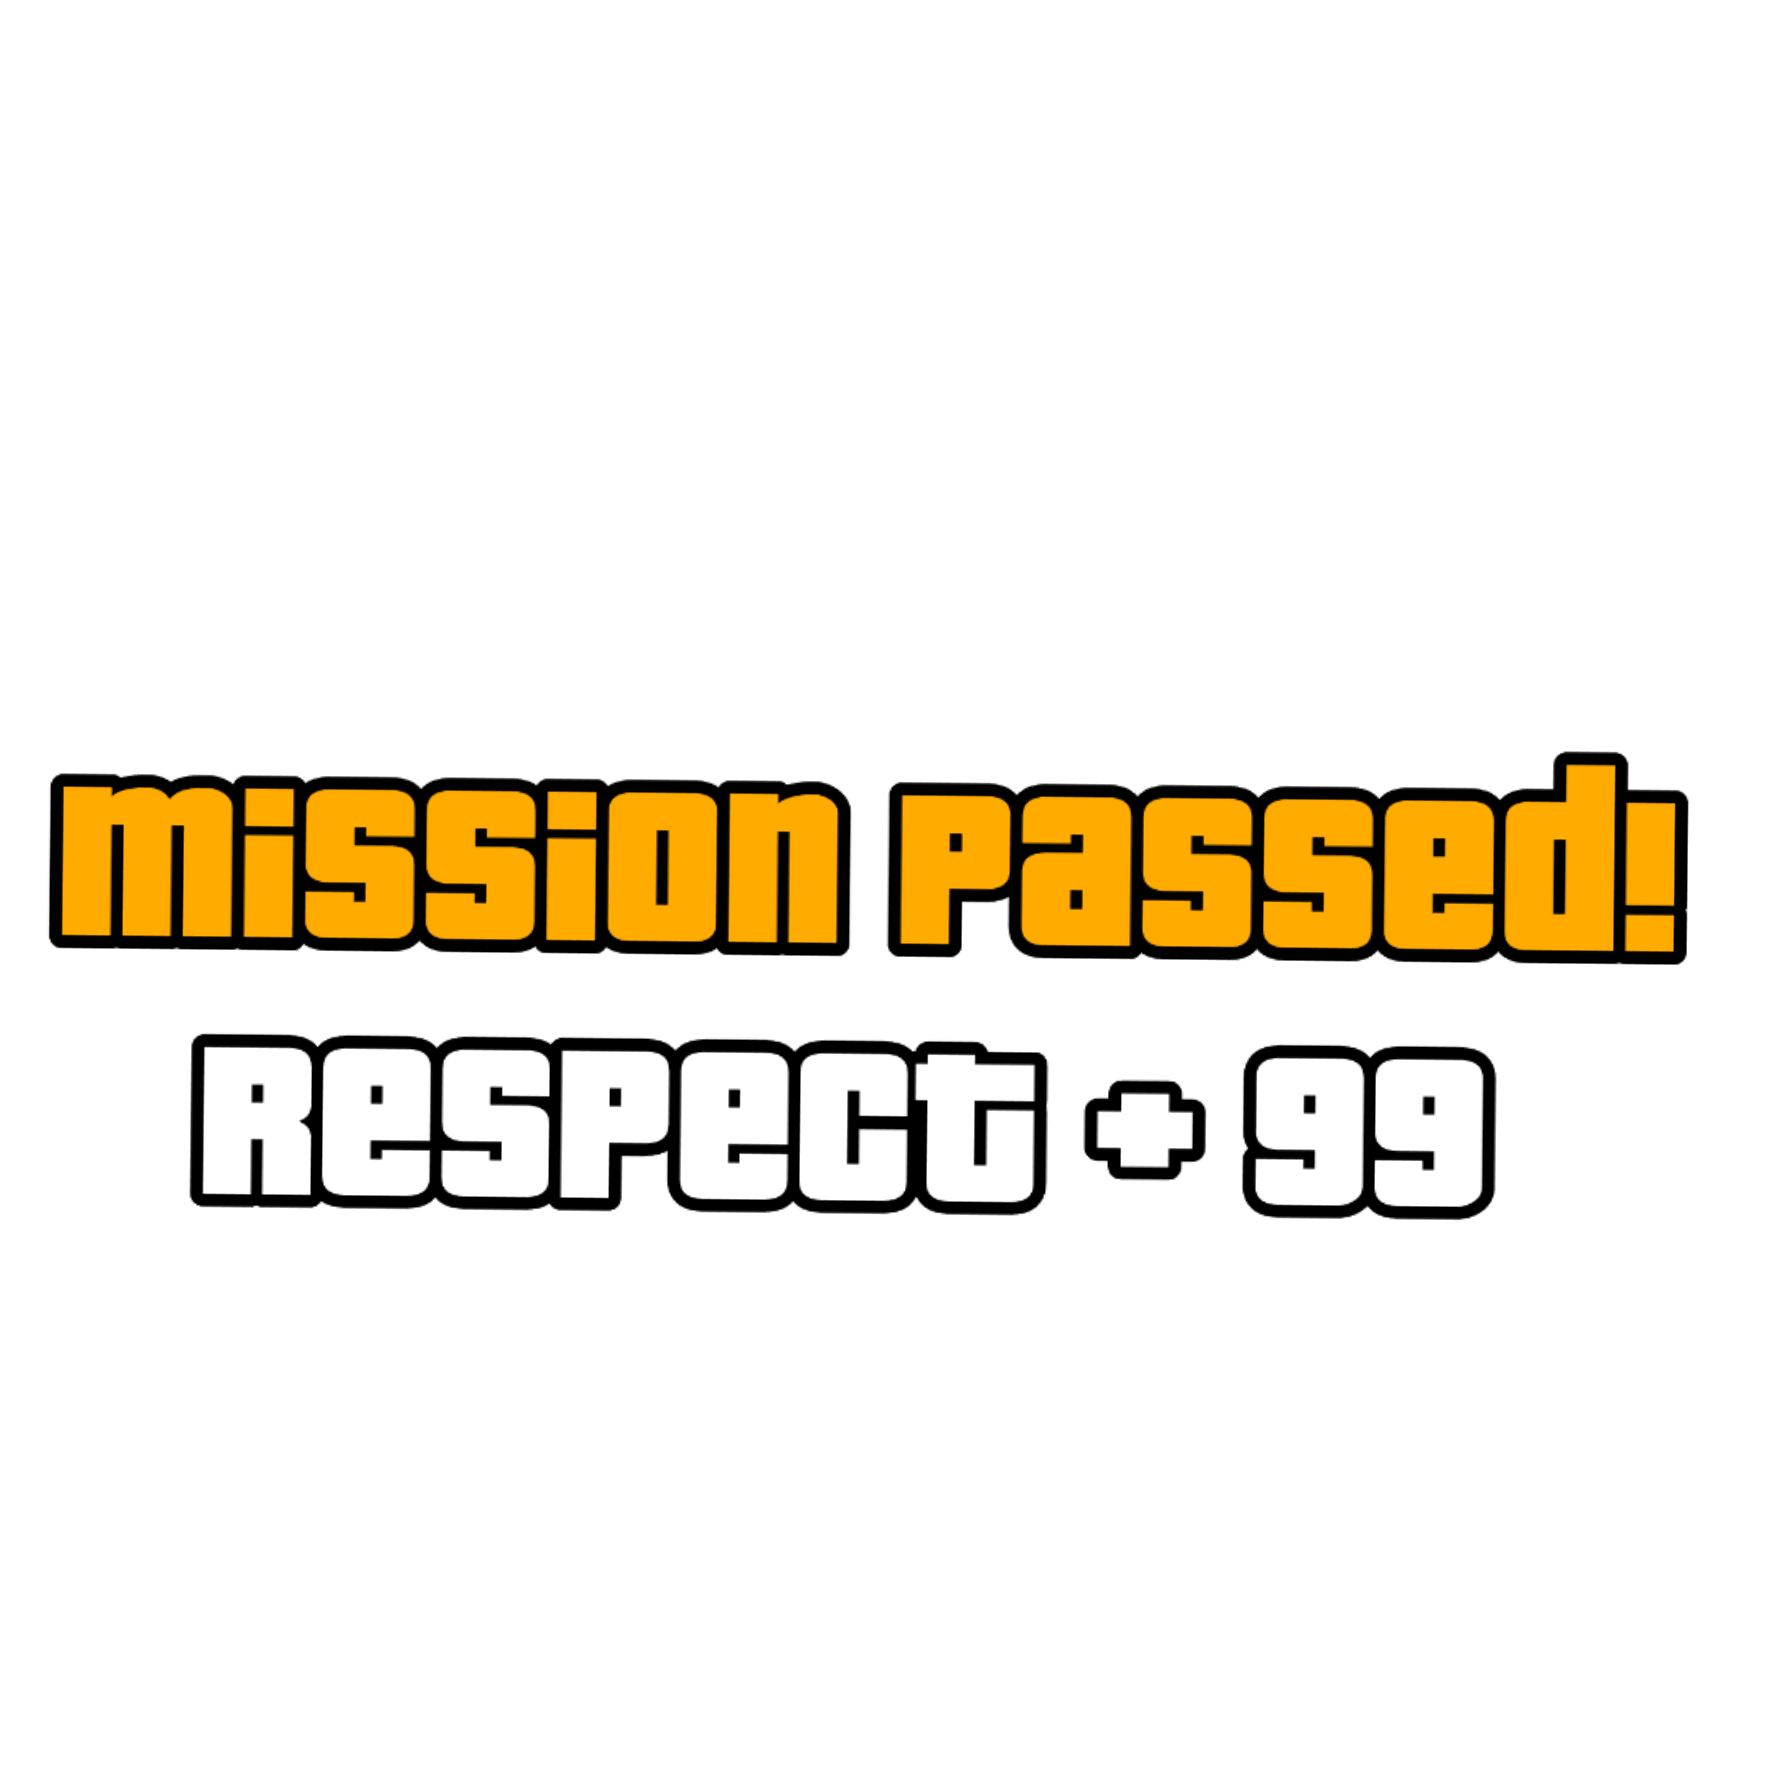 ГТА Сан андреас Mission complete. GTA Mission Passed. Mission complete respect+ GTA. Mission Passed без фона. Задание выполнено сделанная надпись темы изучены